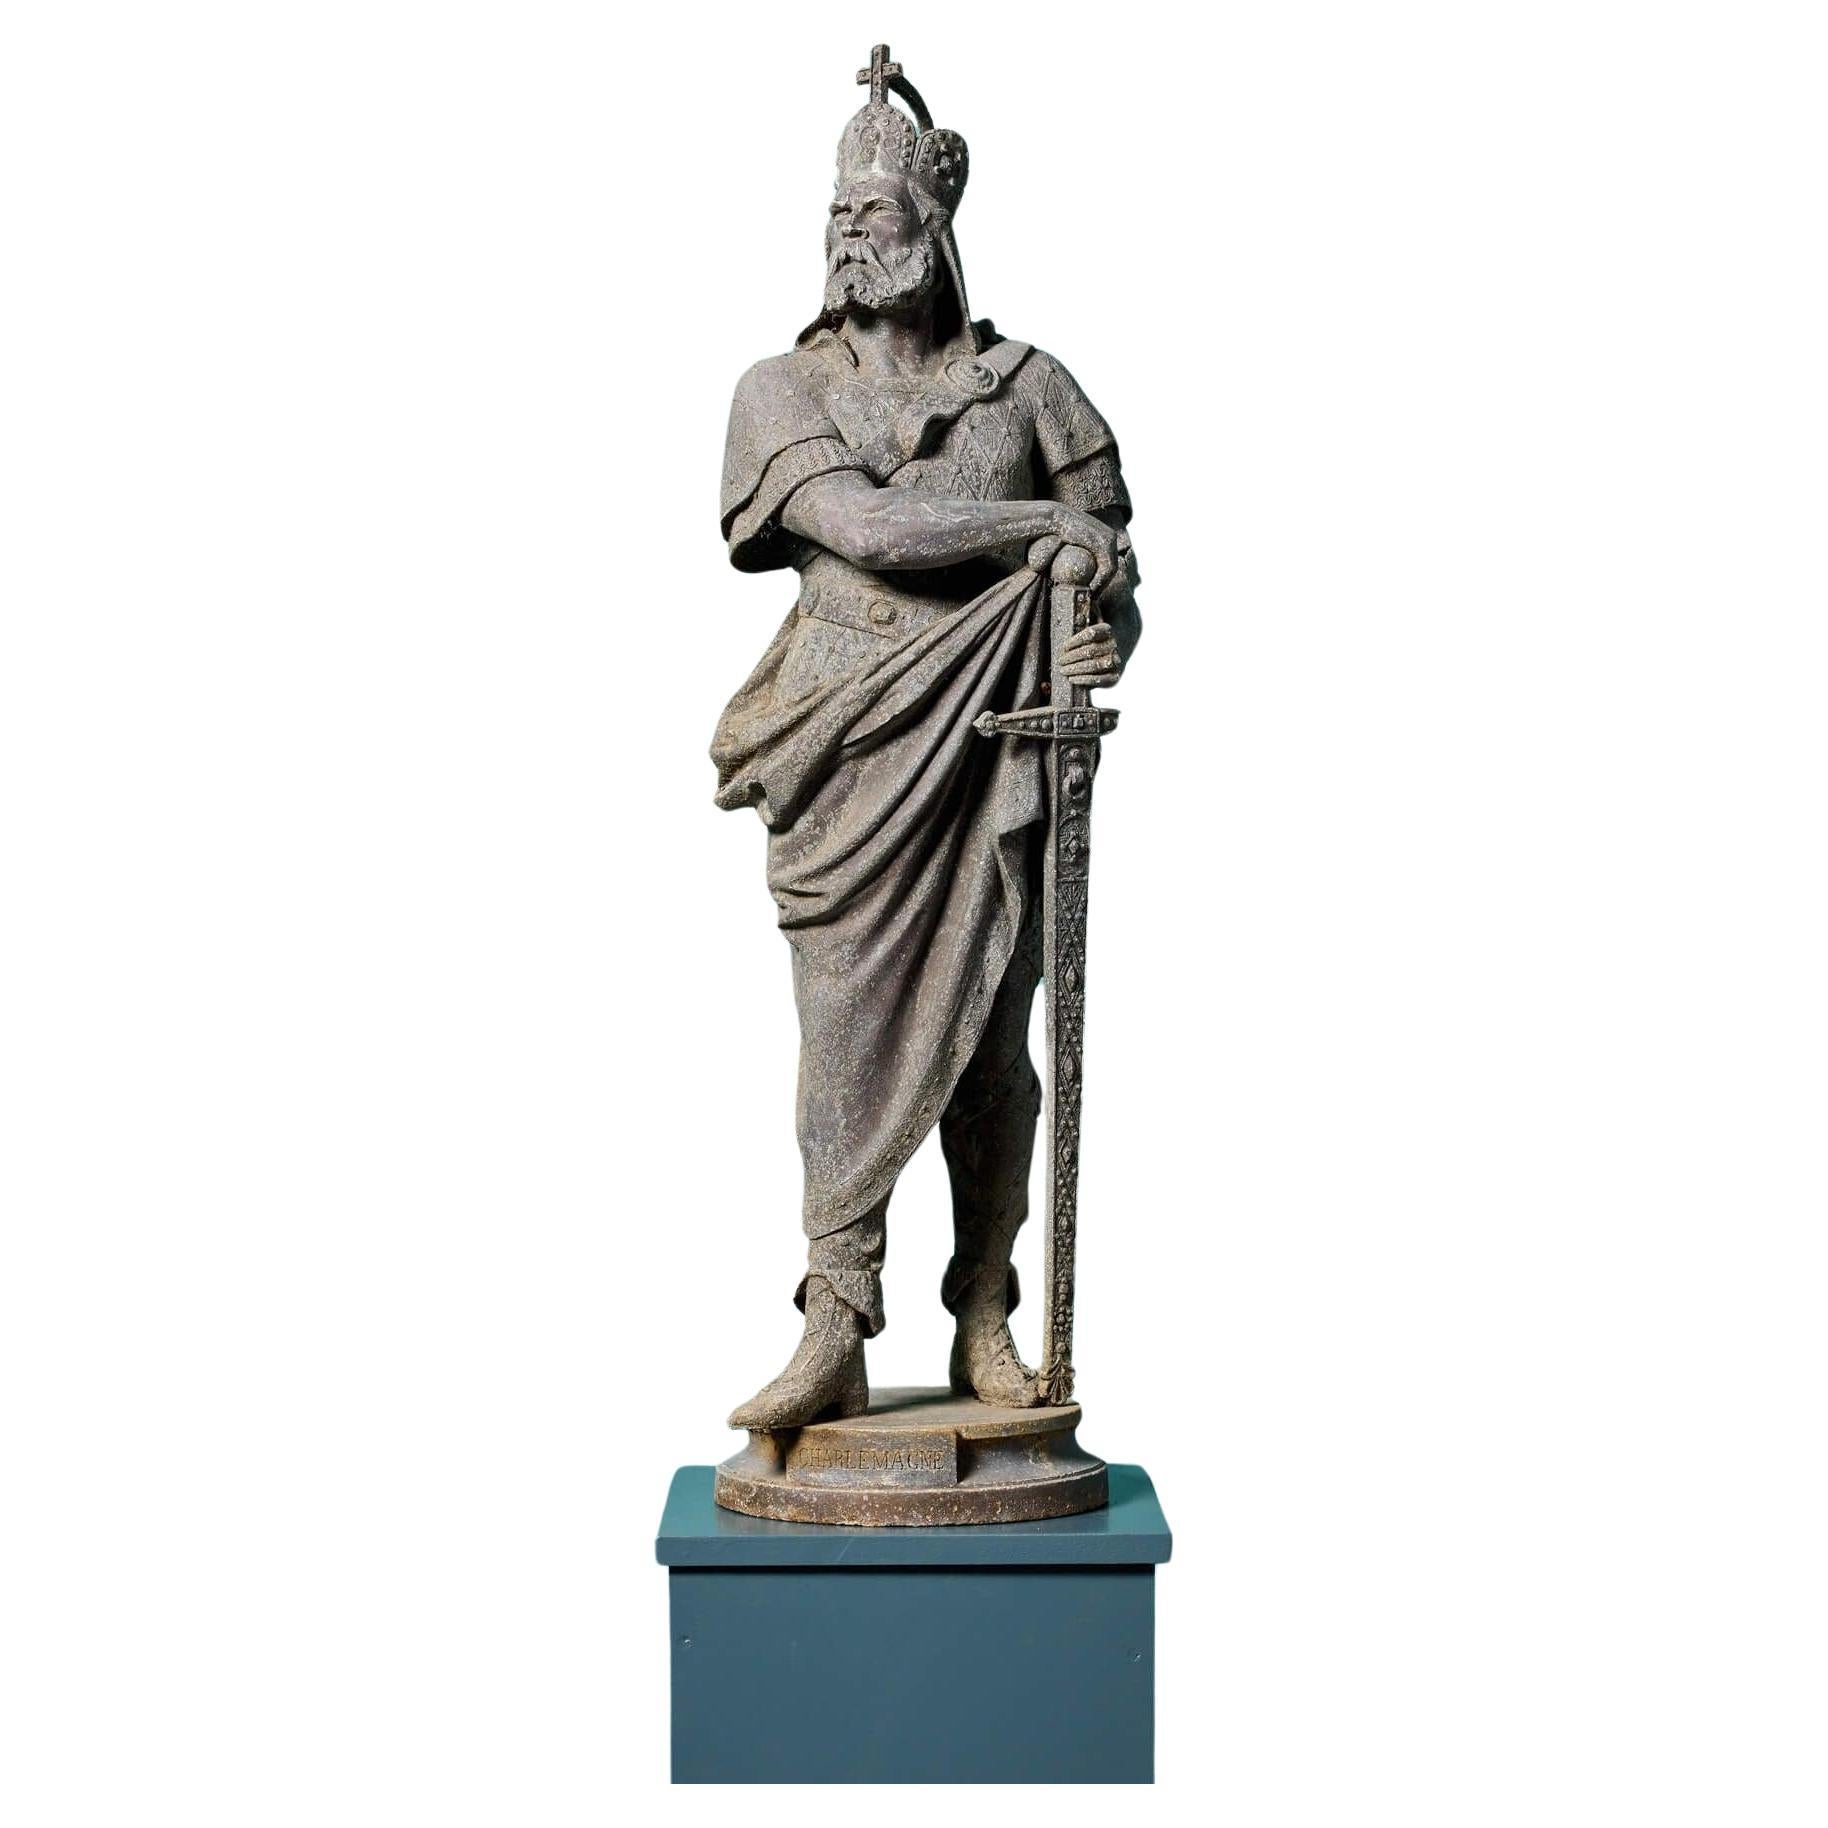 Antike Gartenstatue von Charlemagne (Charles der Große)